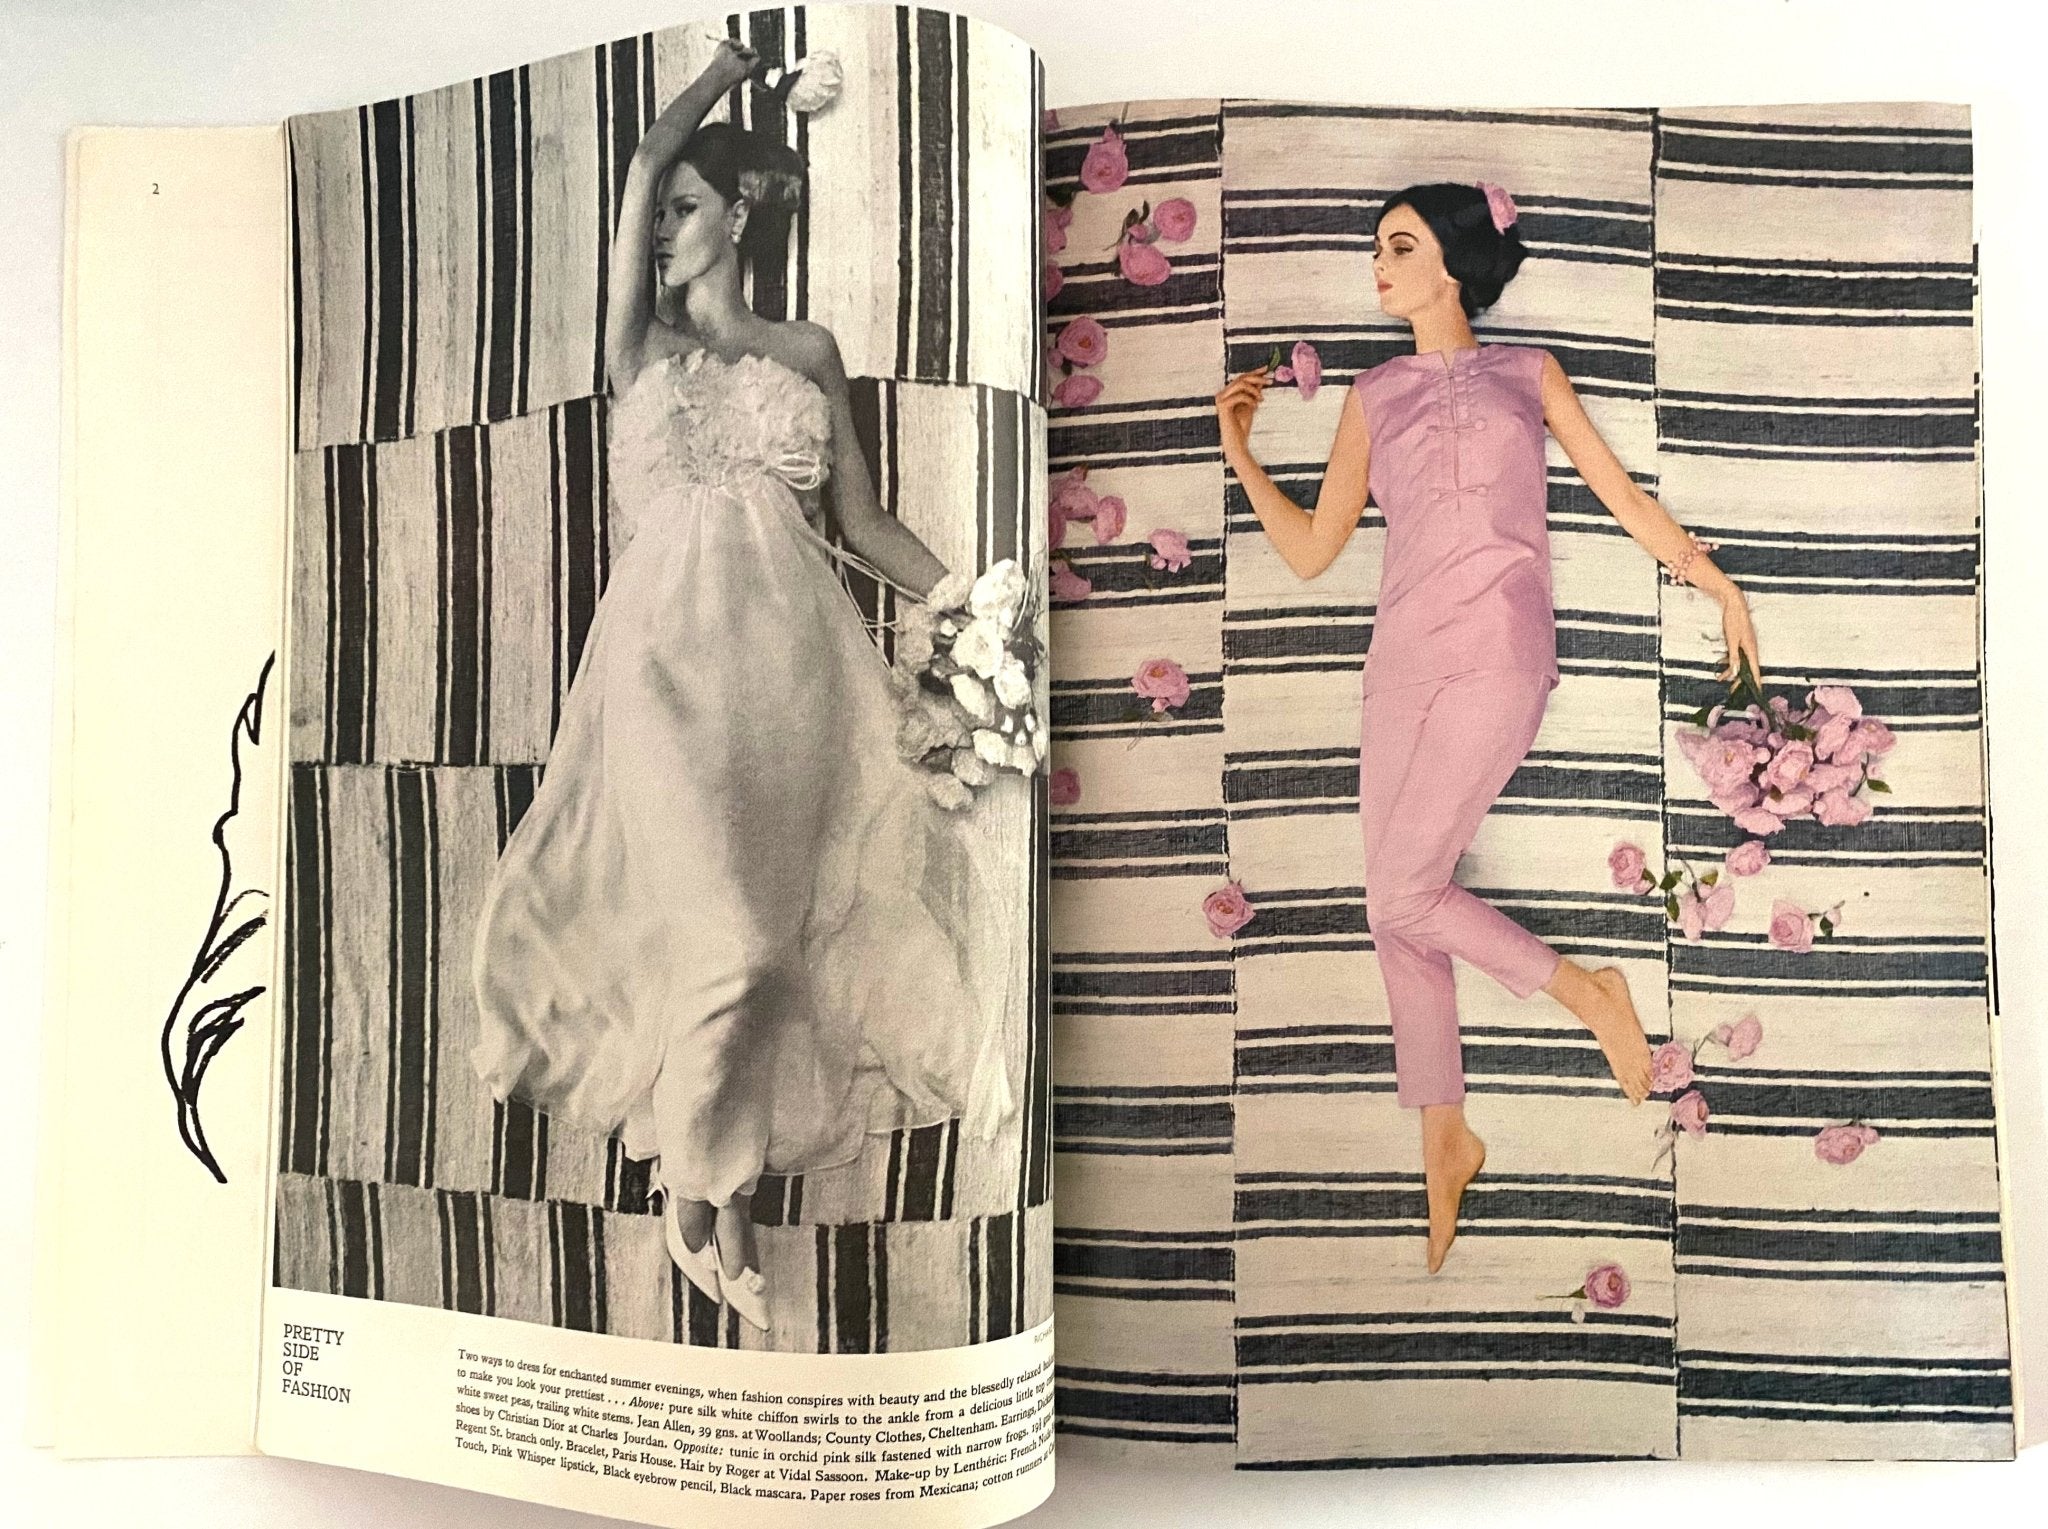 1964 Harper's Bazaar Magazine - "The Pretty Girl" - Cover by Richard Dormer - style - CHNGR